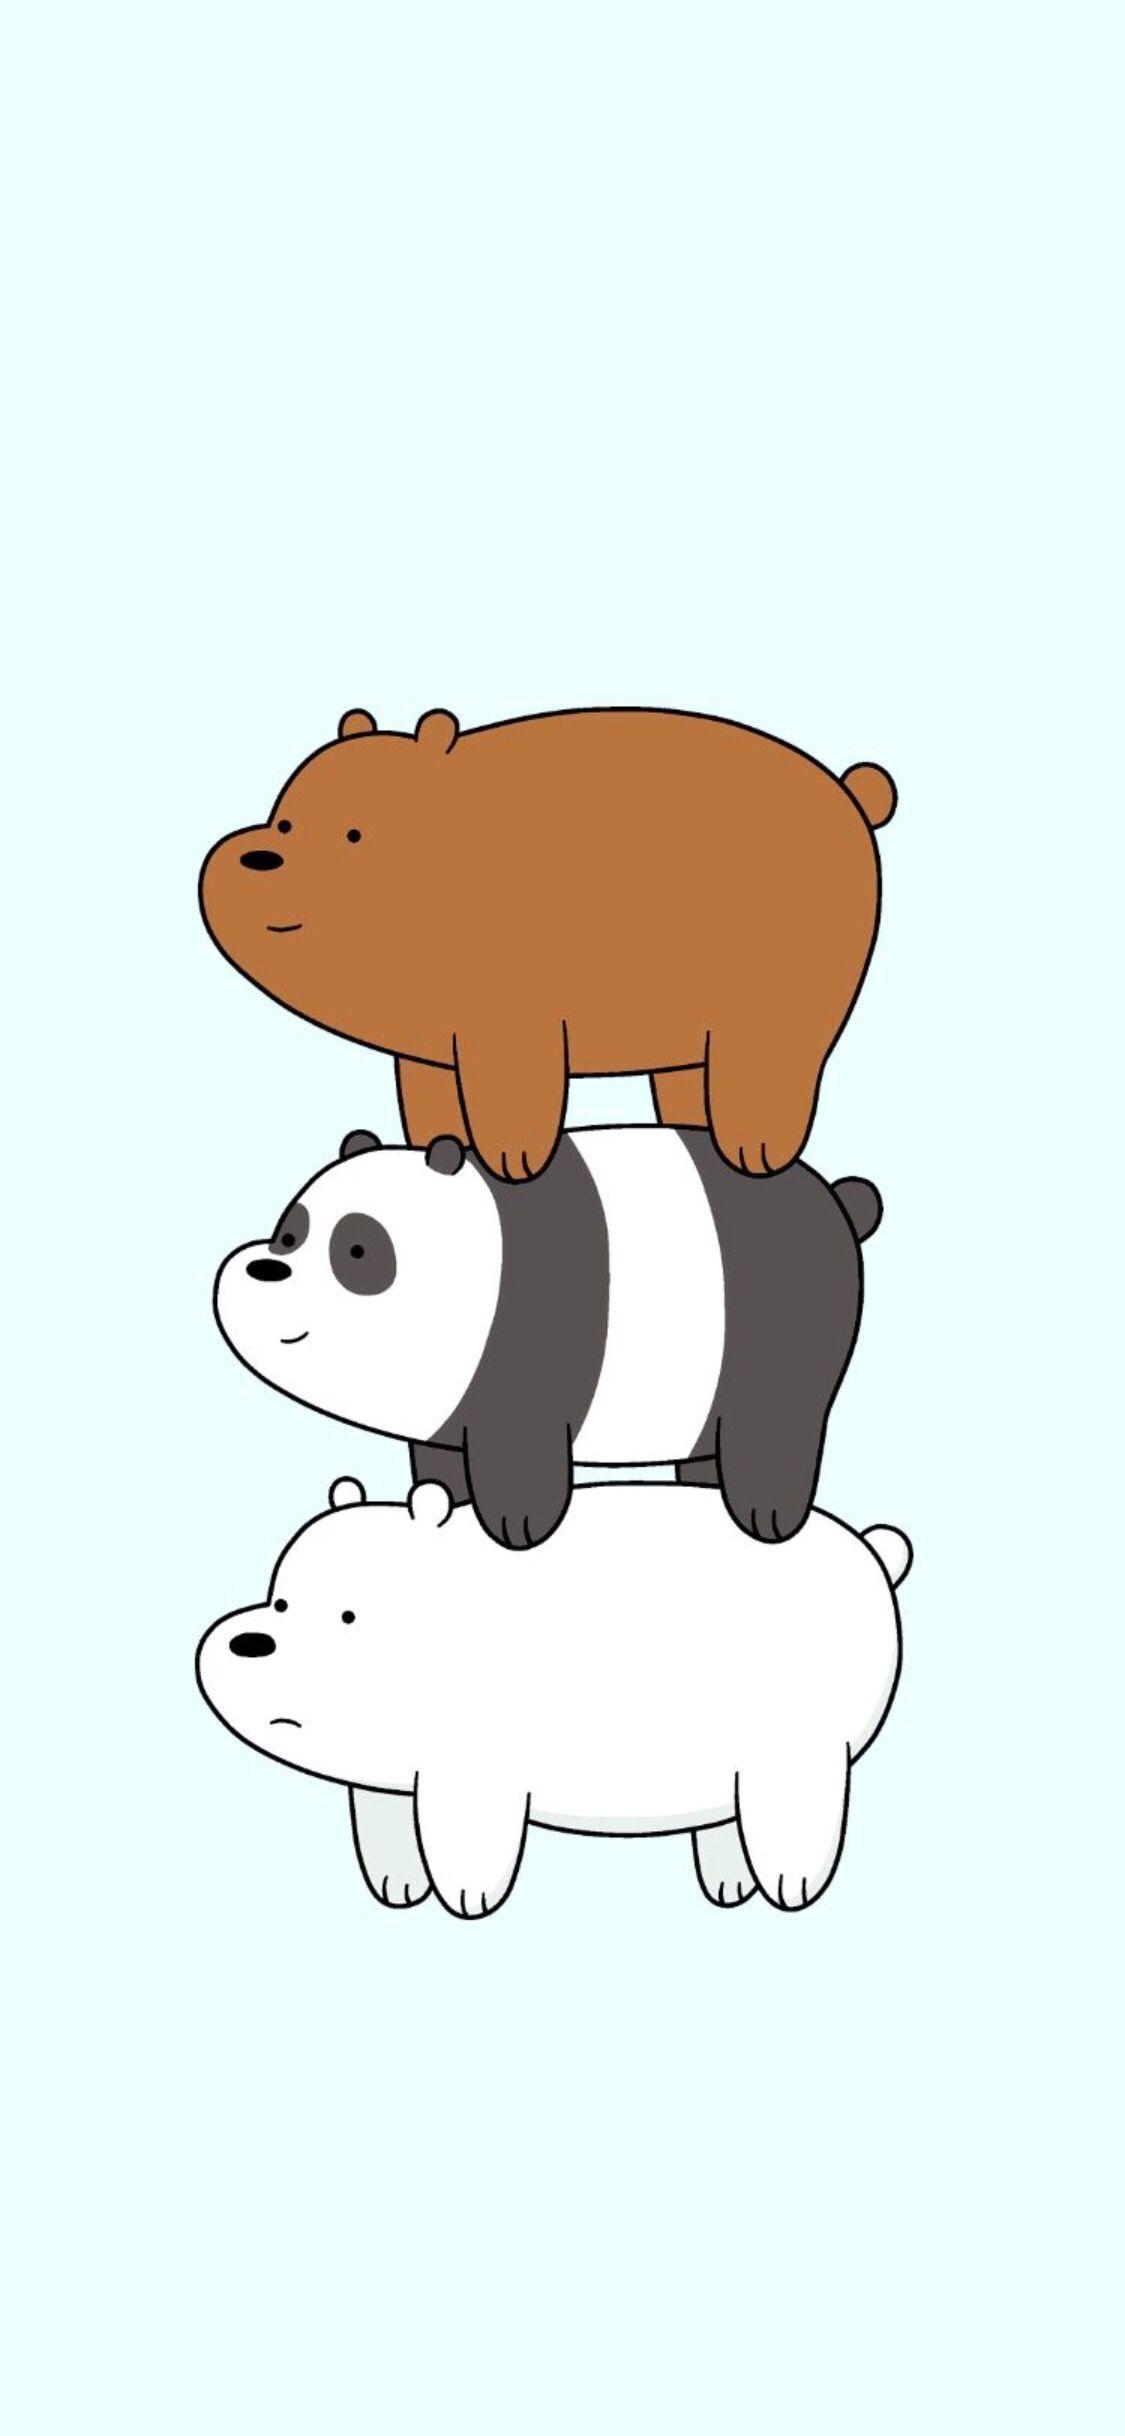 We Bare Bears for iPhone X. Kartun, Hewan, Beruang